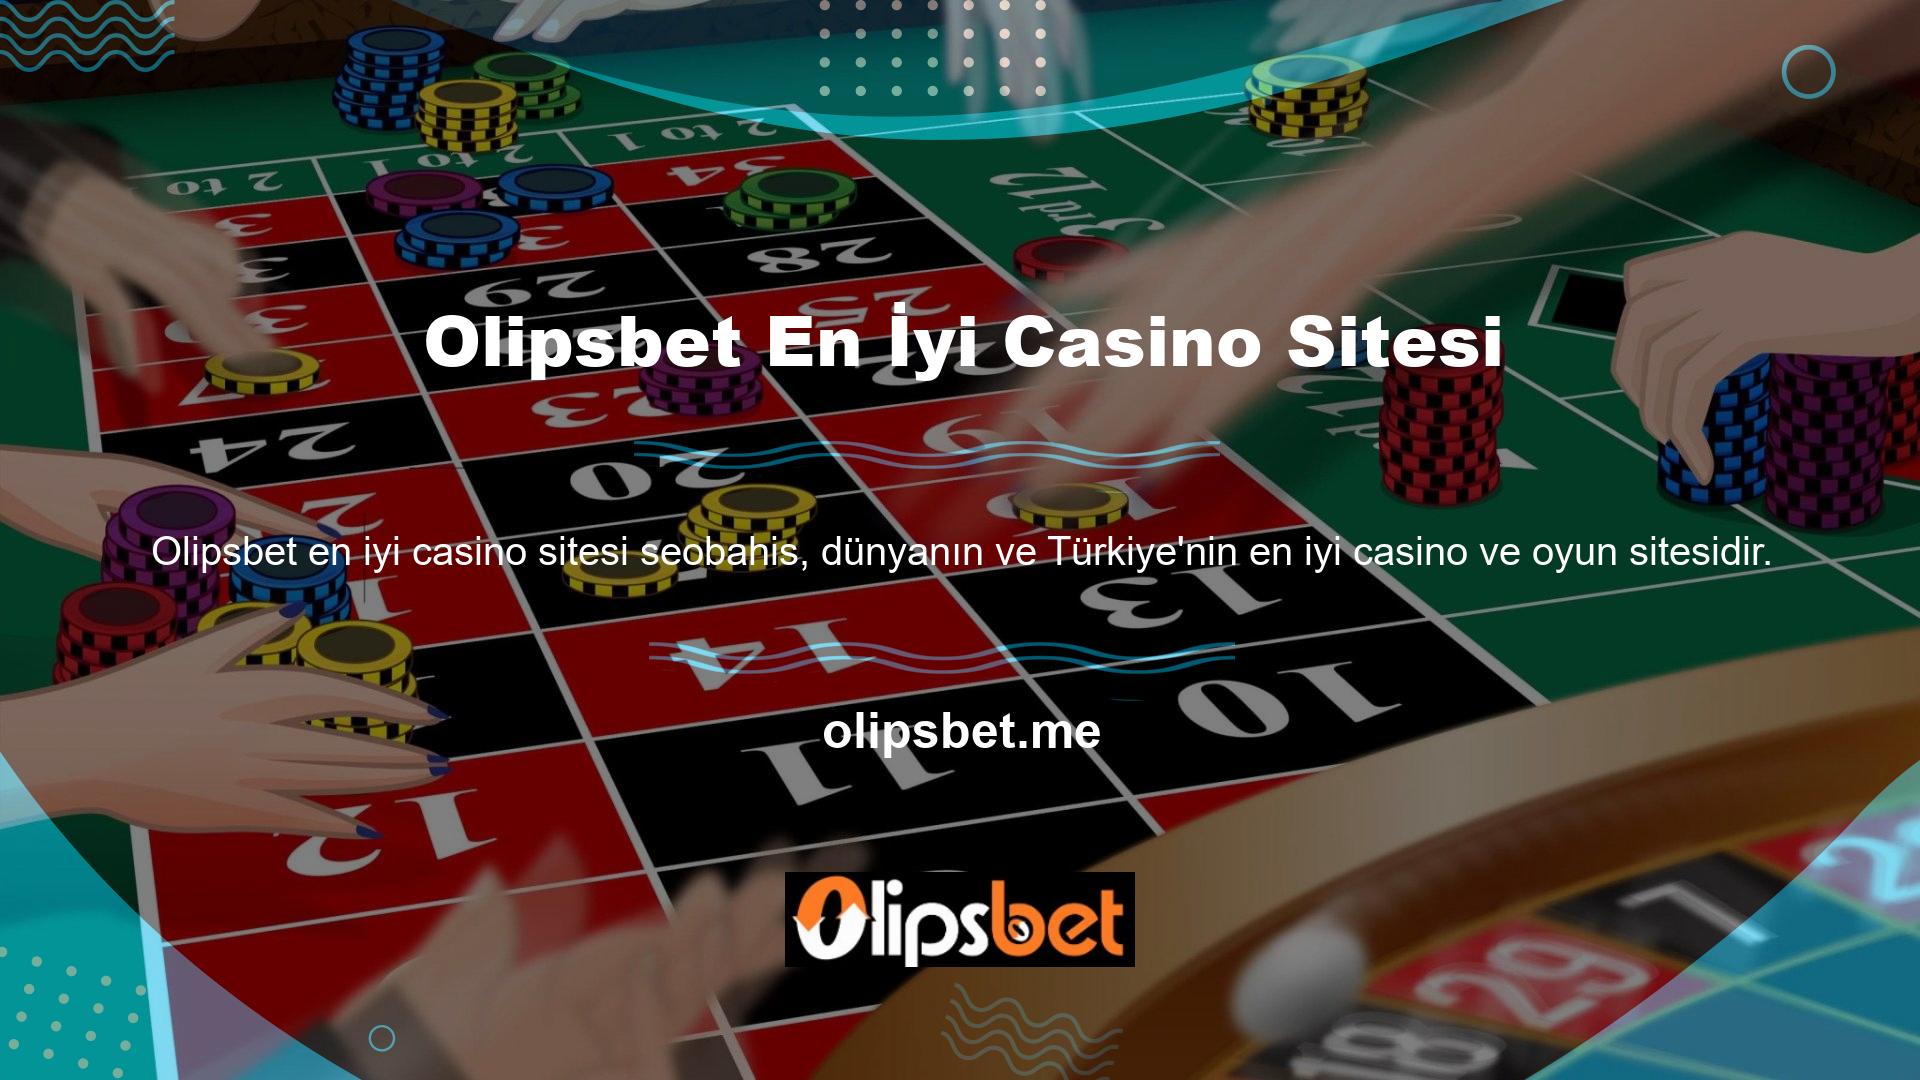 Kazanmak ve oynamak isteyenlerin adresi Olipsbet en iyi casino sitesini ziyaret etmek istiyorsanız bizi takip edin